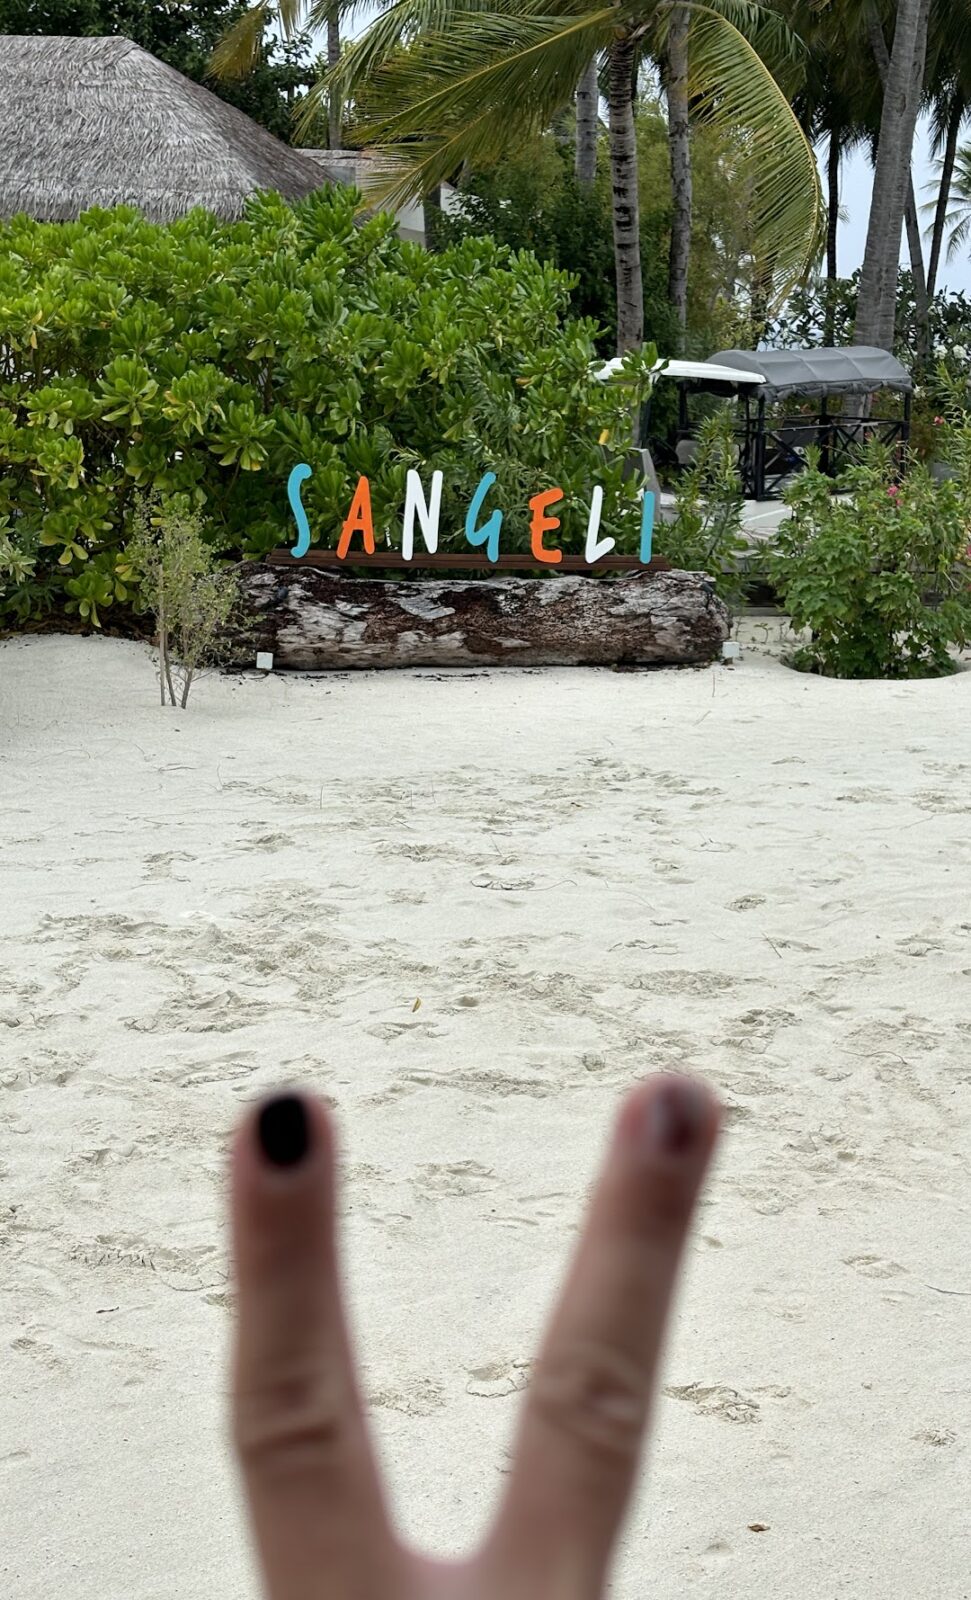 農曆年OBLU SELECT Sangeli 全包式度假村，下次還有機會去馬爾地夫一定會在選擇Angela小姐